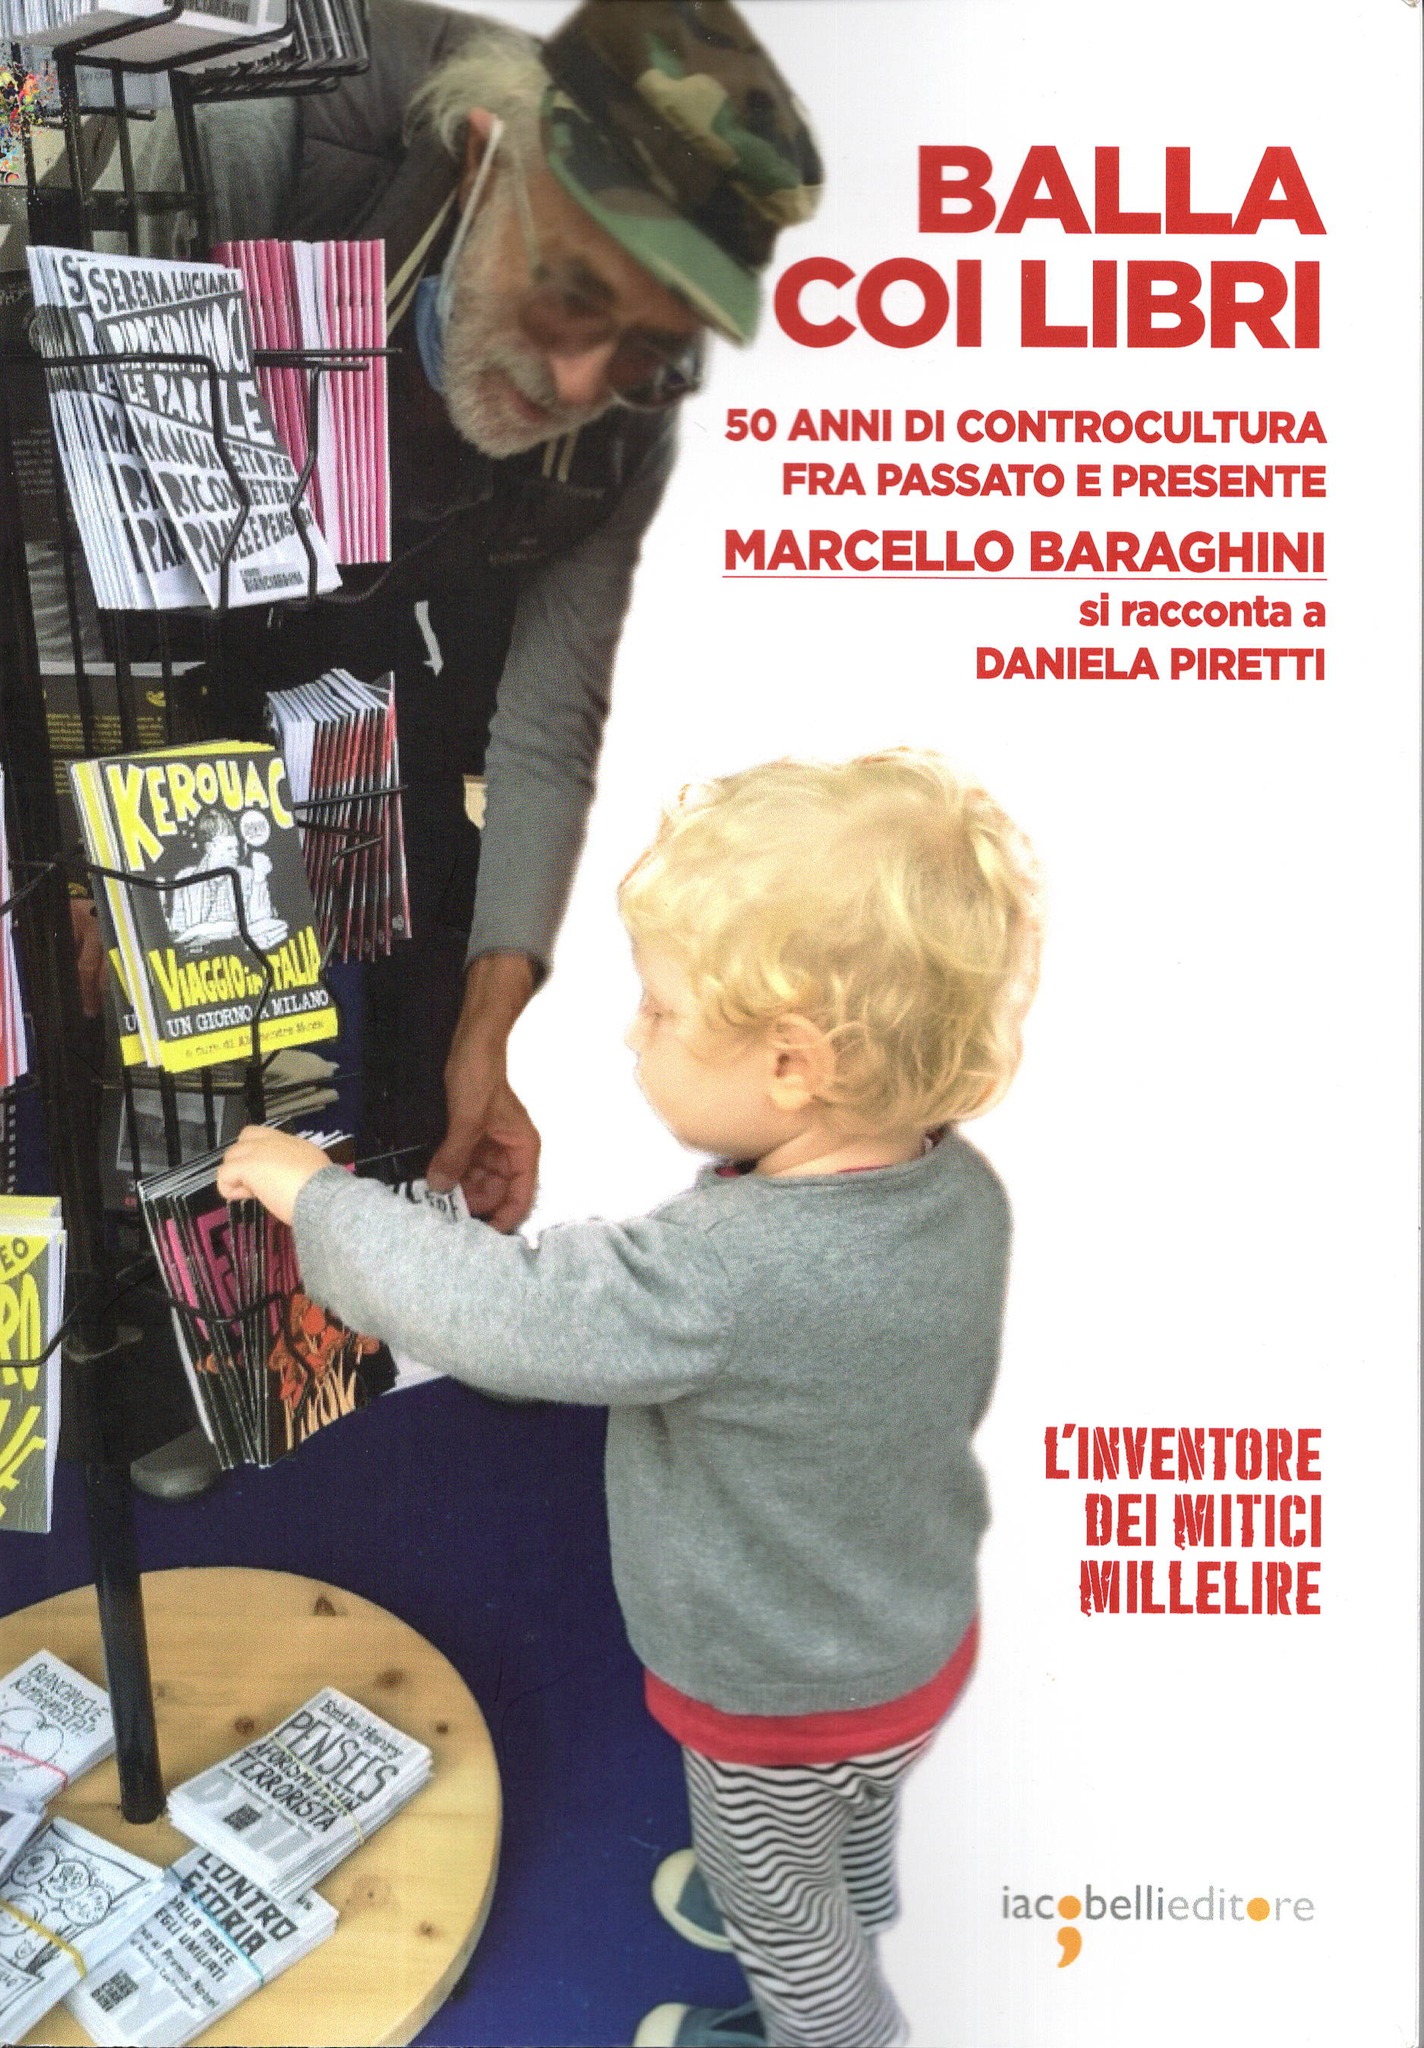 Esce “Balla coi libri” di Daniela Piretti: l’epopea di Marcello Baraghini e dell’editoria di controcultura in Italia